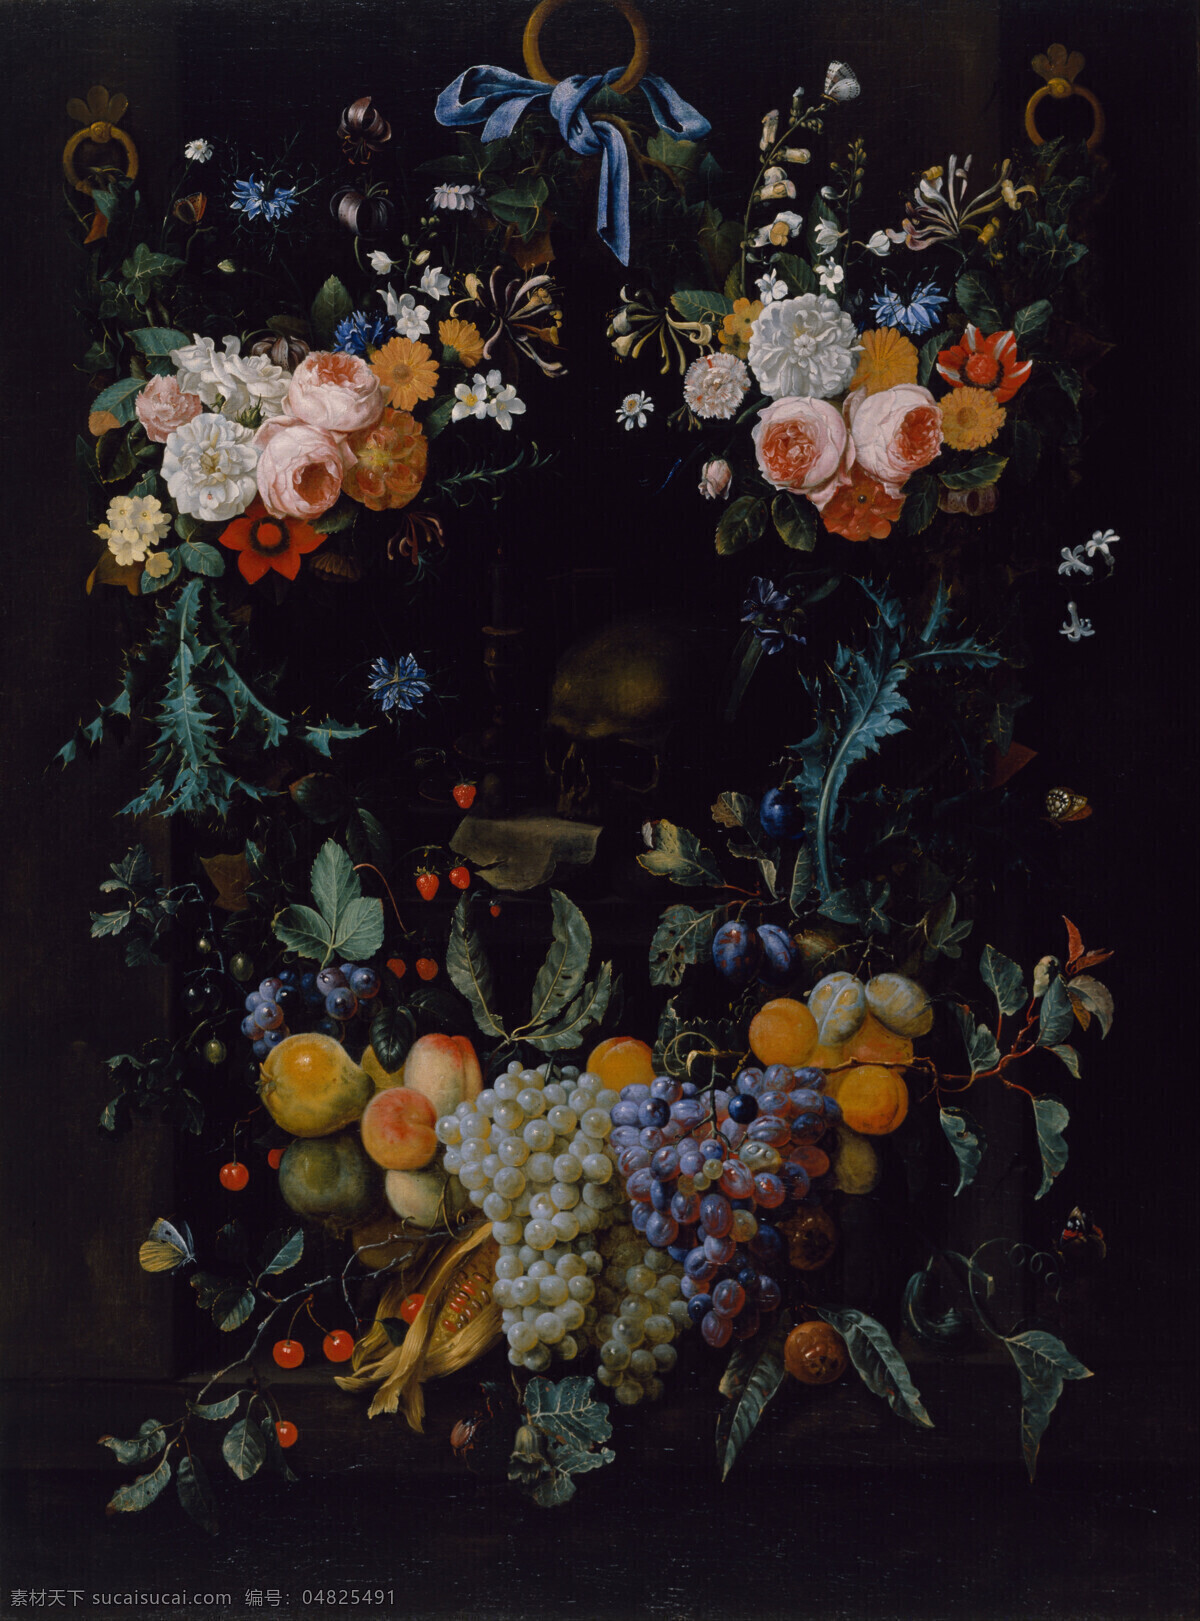 永恒 之美 绘画书法 葡萄 桃子 文化艺术 樱桃 油画 永恒之美 尤里 斯 范 森 作品 静物 鲜花 水果 家居装饰素材